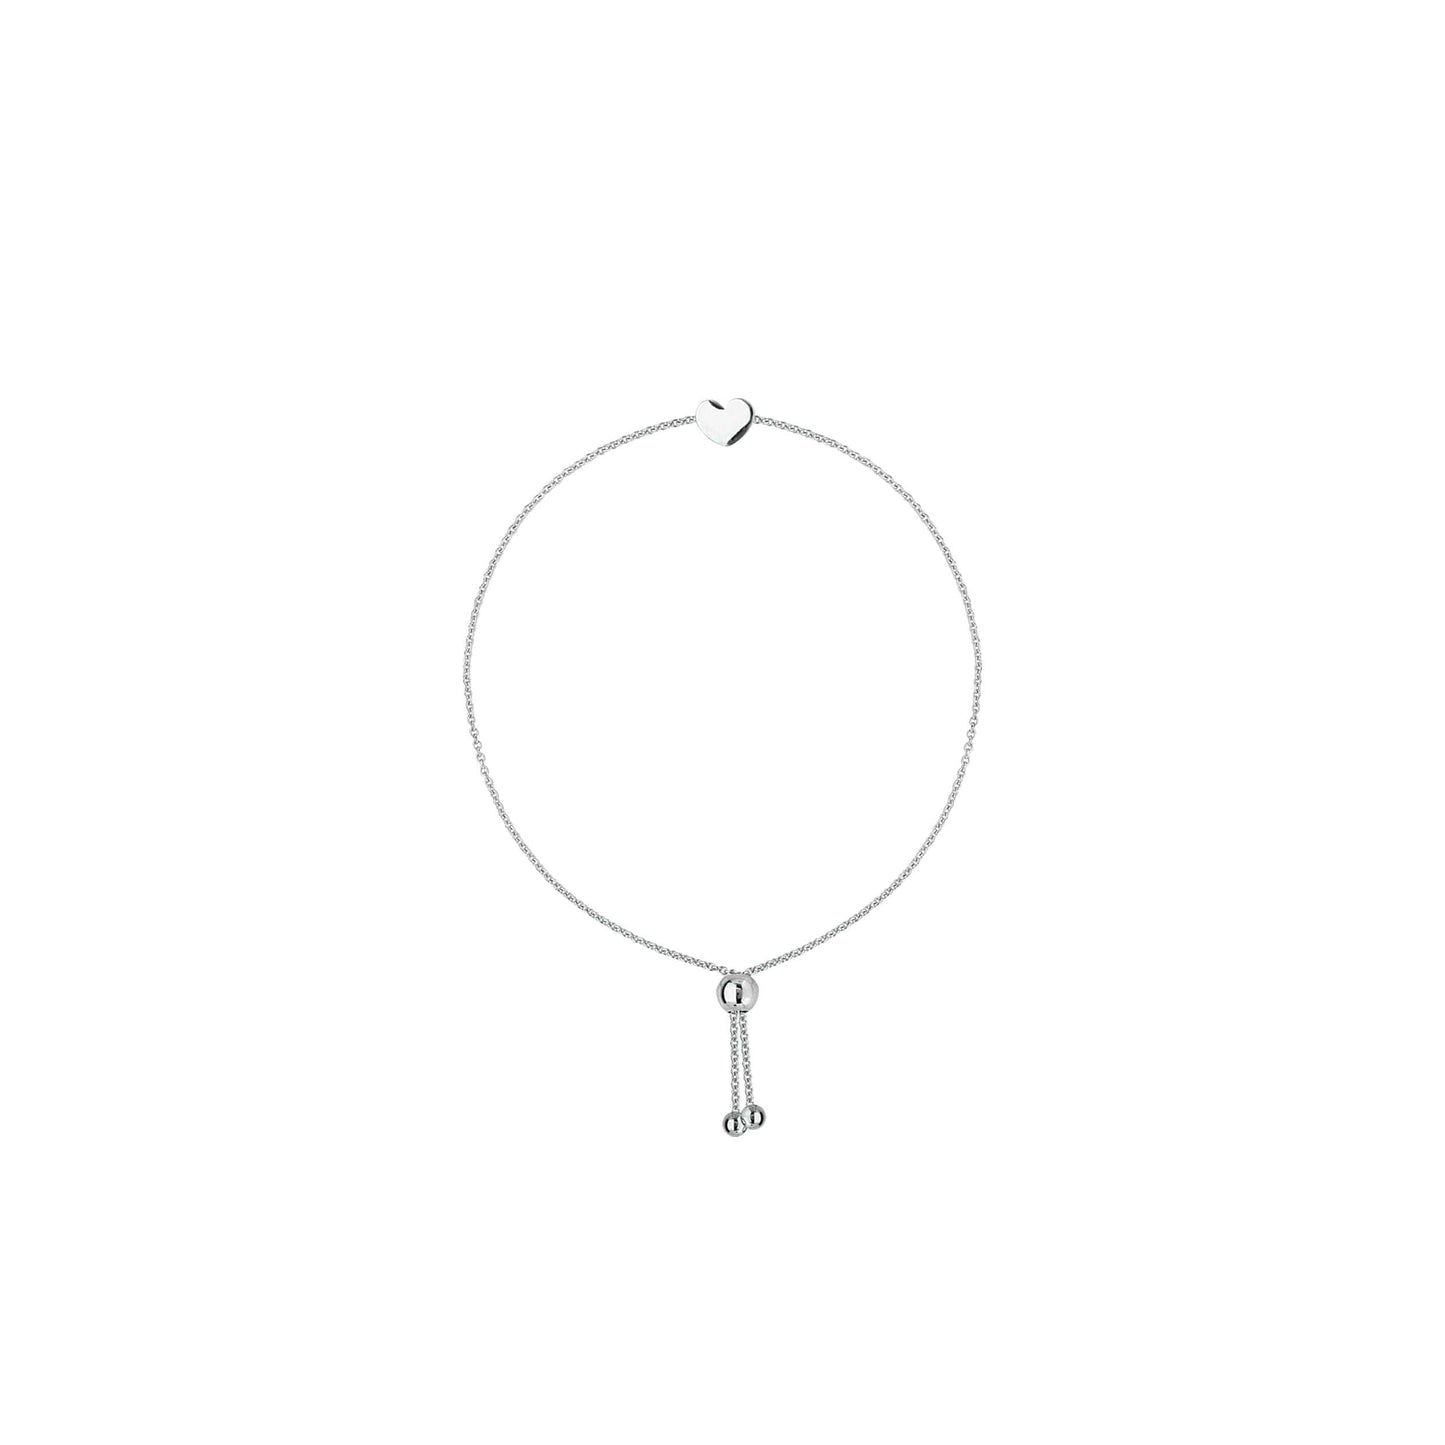 Adjustable Heart Bracelet - Happy Jewelers Fine Jewelry Lifetime Warranty